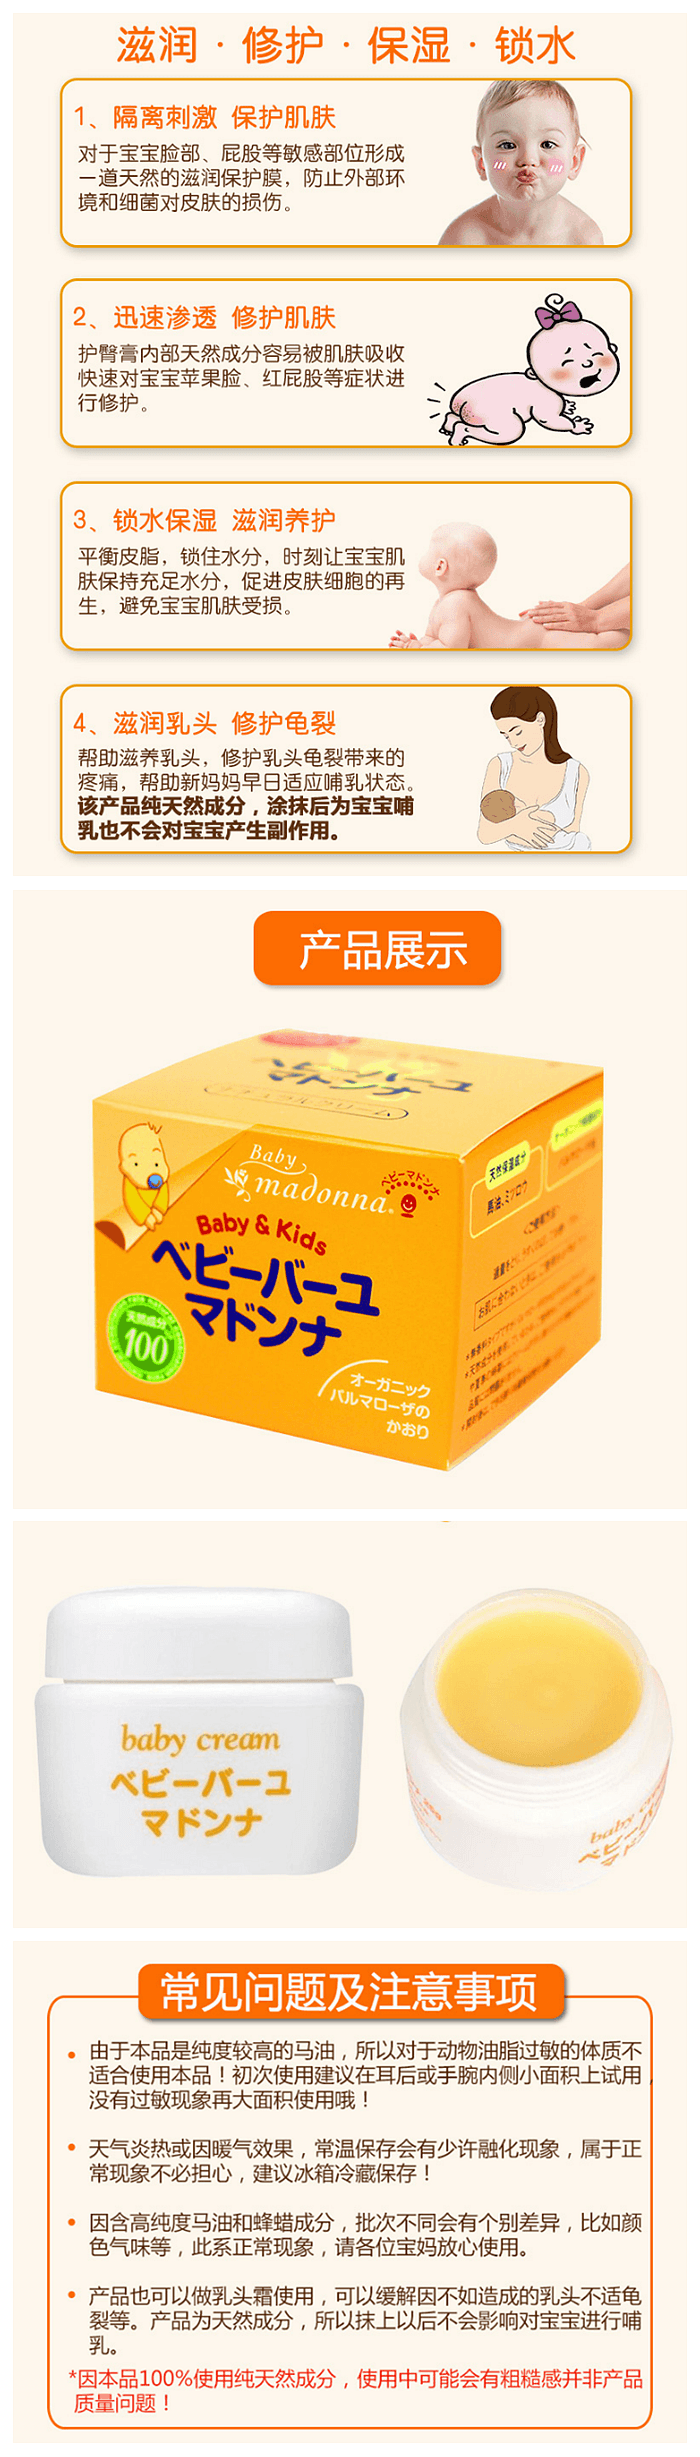 【日本直郵】日本 MADONNA 純天然配方 嬰兒馬油 護臀膏 25g